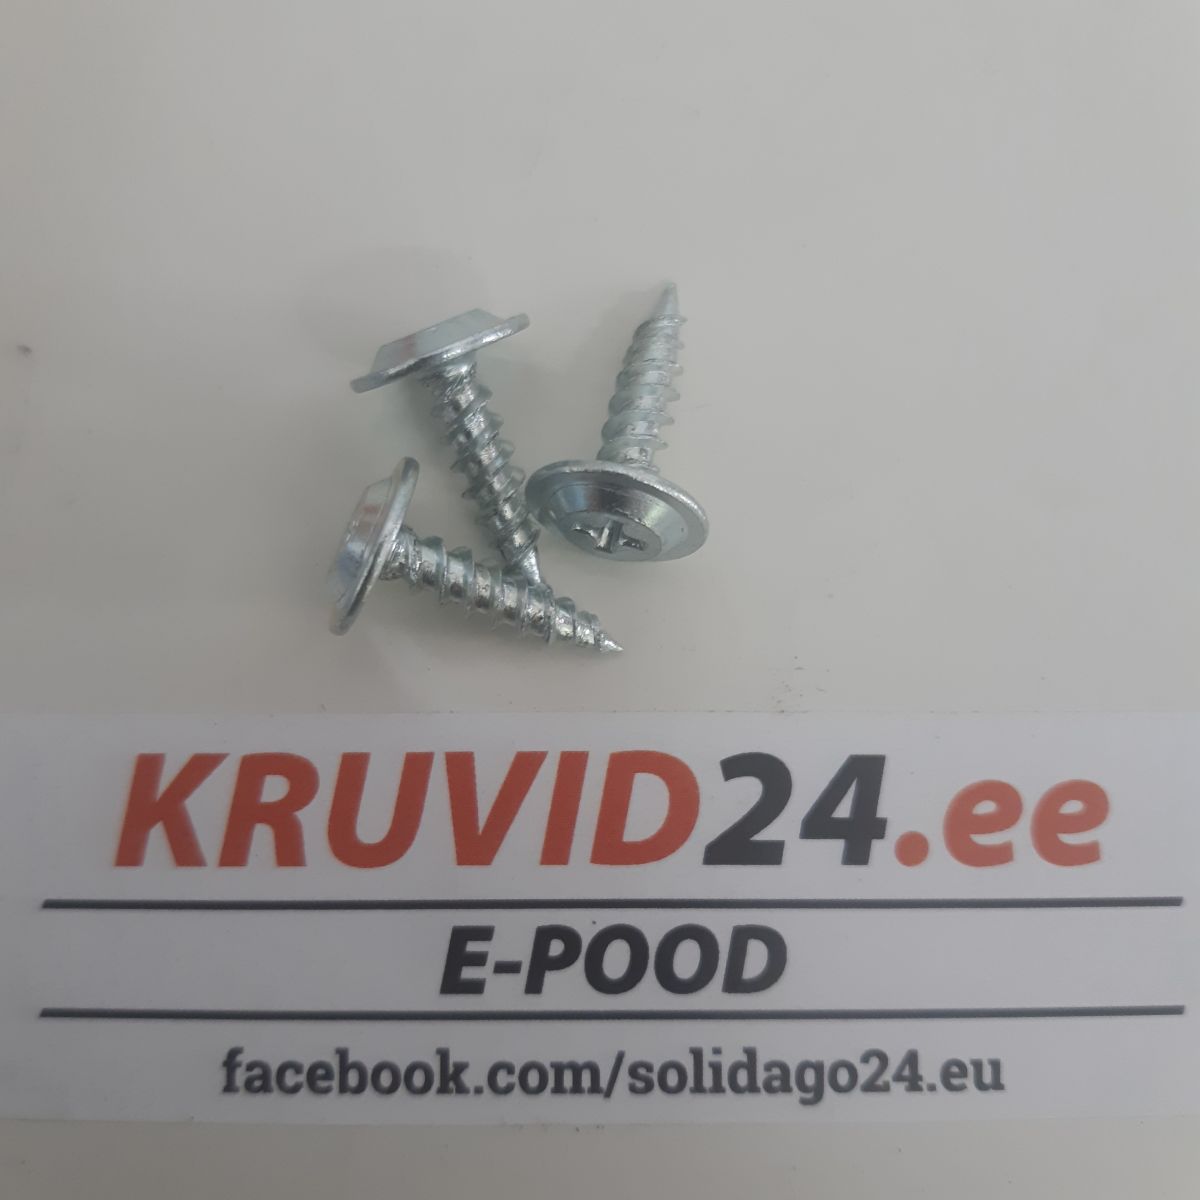 Self-drilling screws 4,2x16 500pcs/pack